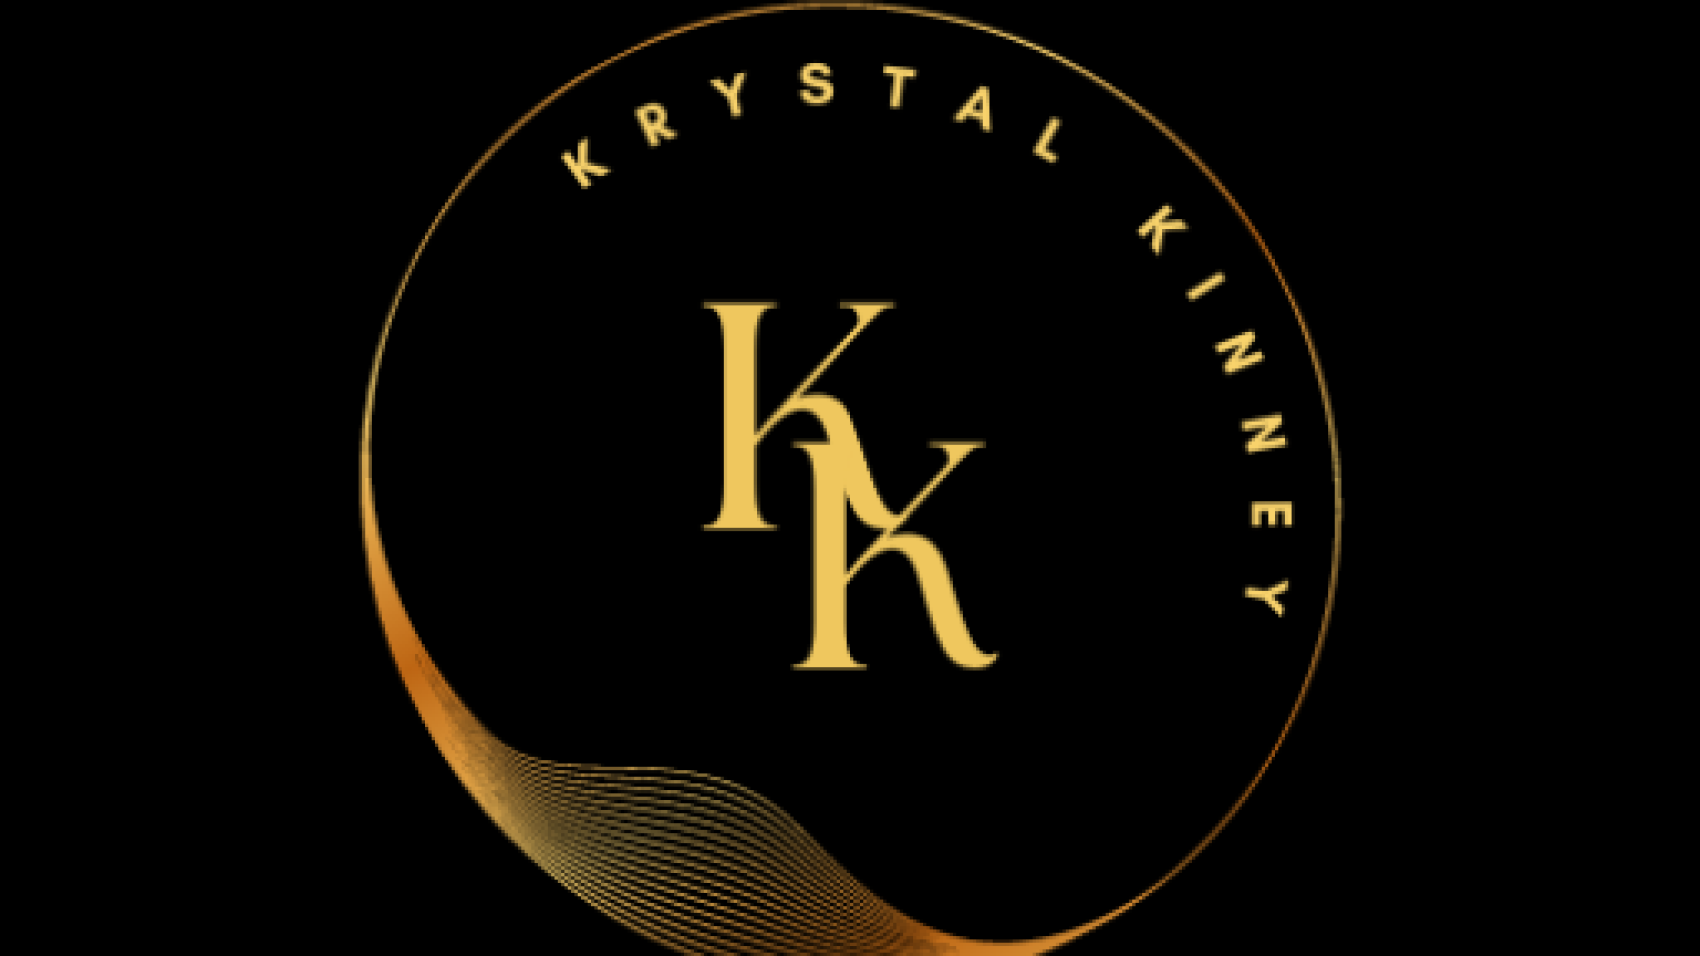 Kinney Records Krystal Kinney / Krystal Kinney Photos Krystal Kinney Krystal Kinney Records Krystal Kinney / Krystal Kinney Photos Krystal Kinney